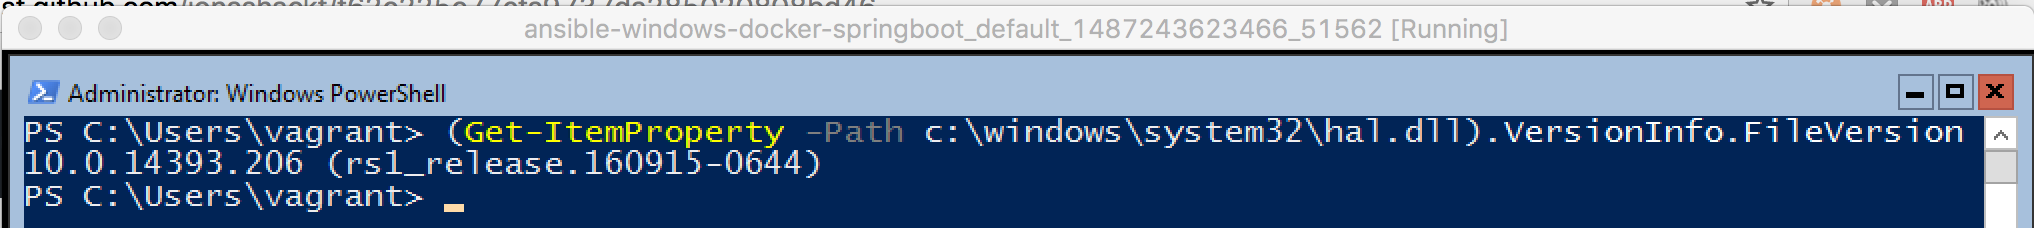 Windows_build_number_Docker_working